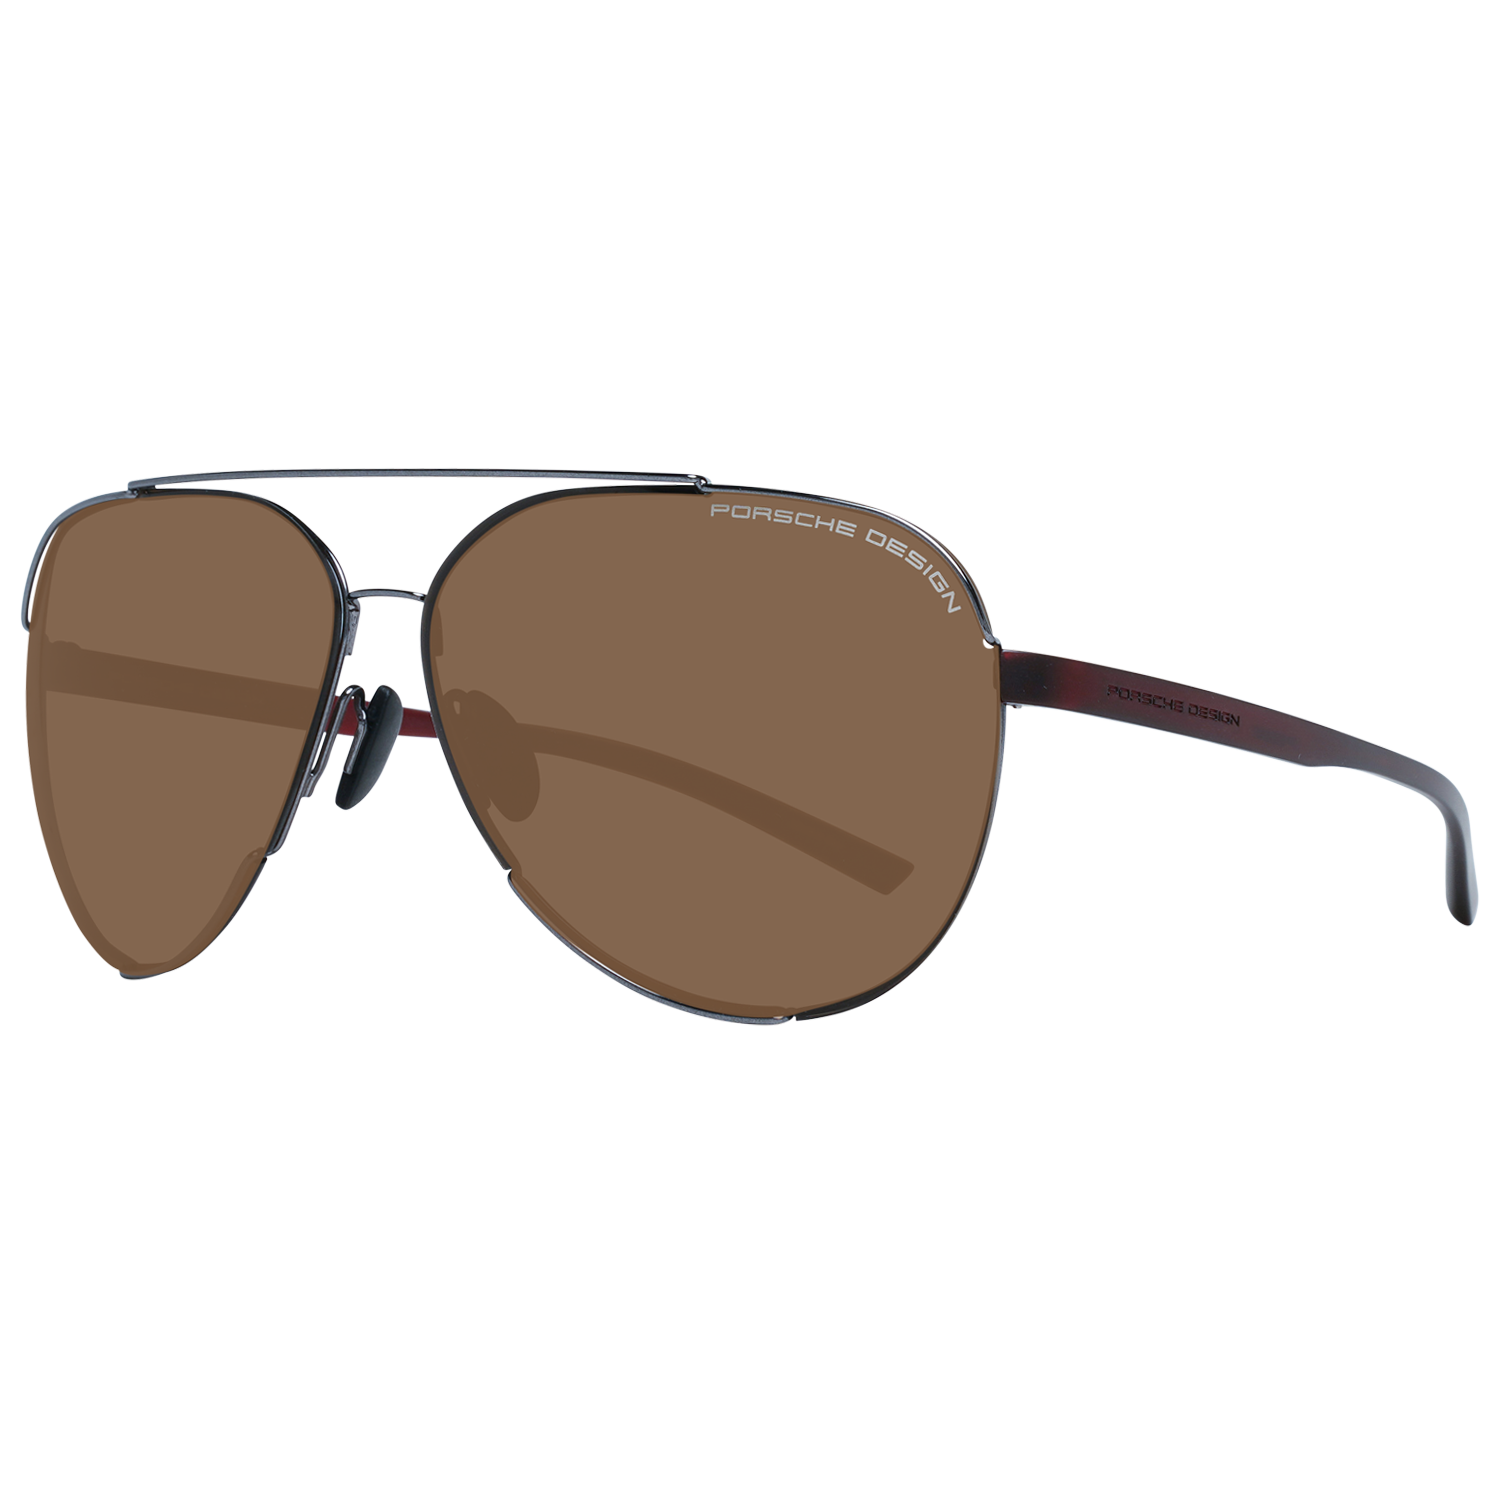 Porsche Design Sunglasses Porsche Design Sunglasses P8682 B 66 Eyeglasses Eyewear UK USA Australia 